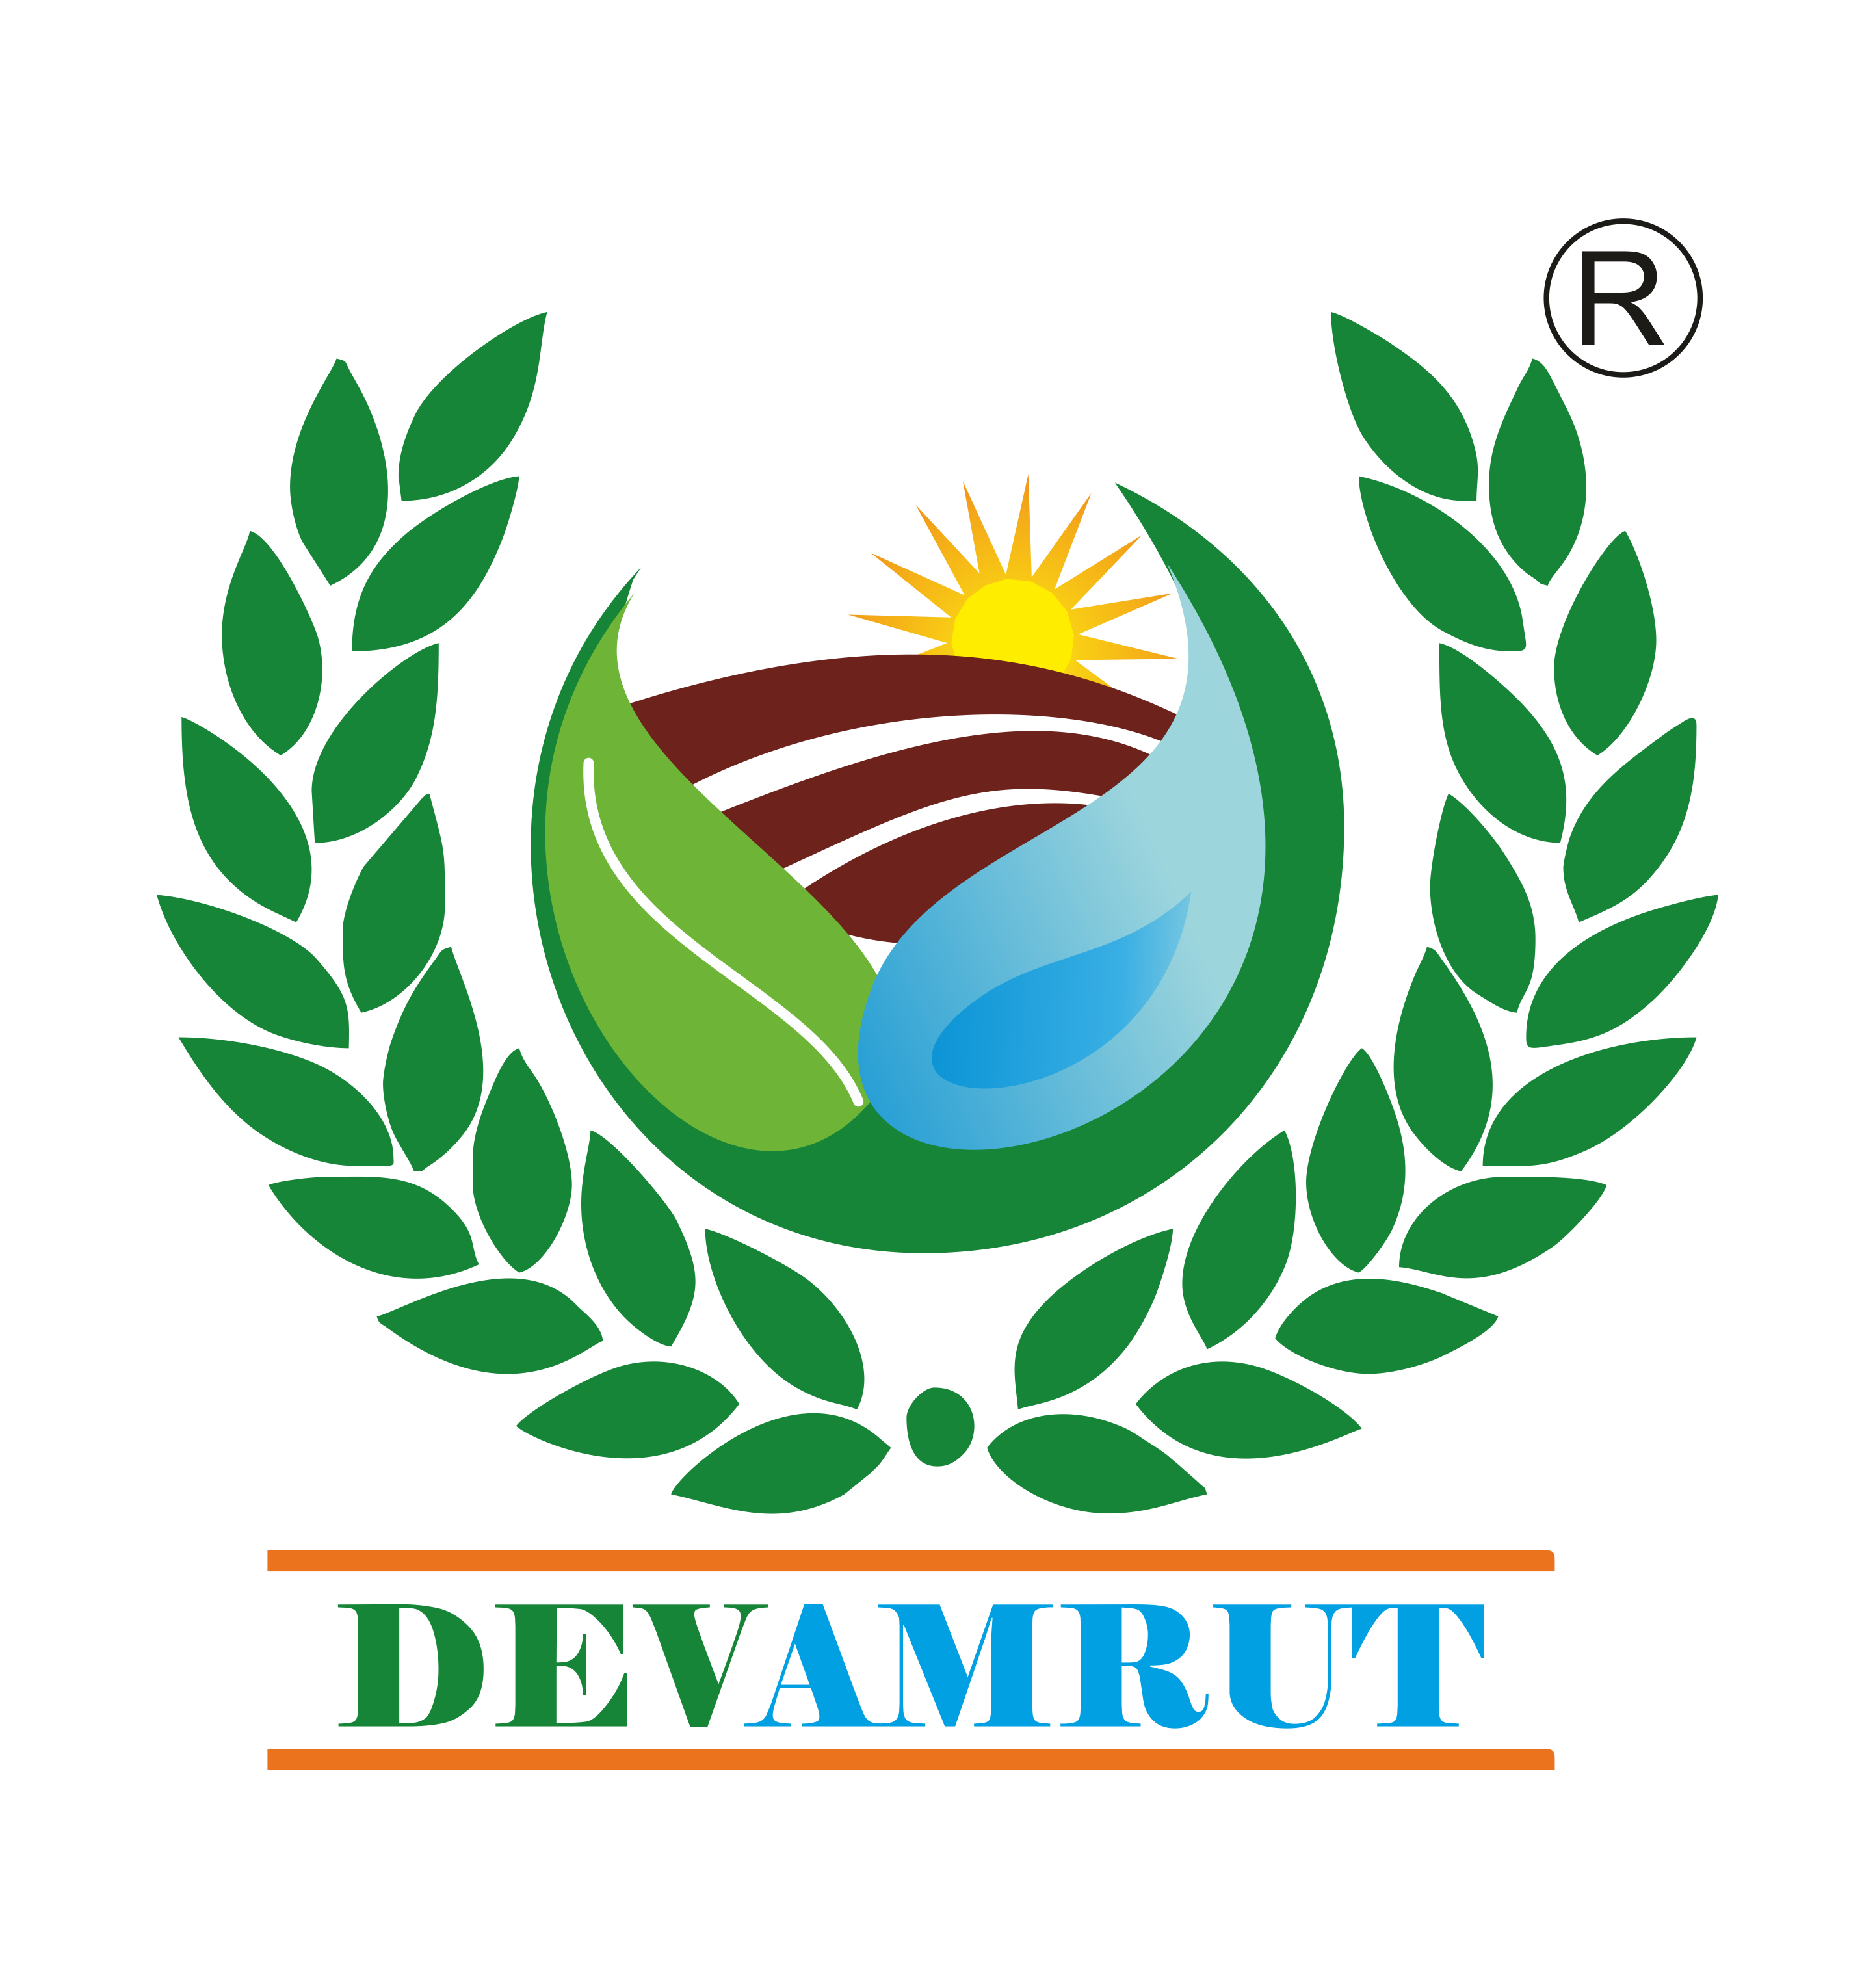 DevamrutAgroTech